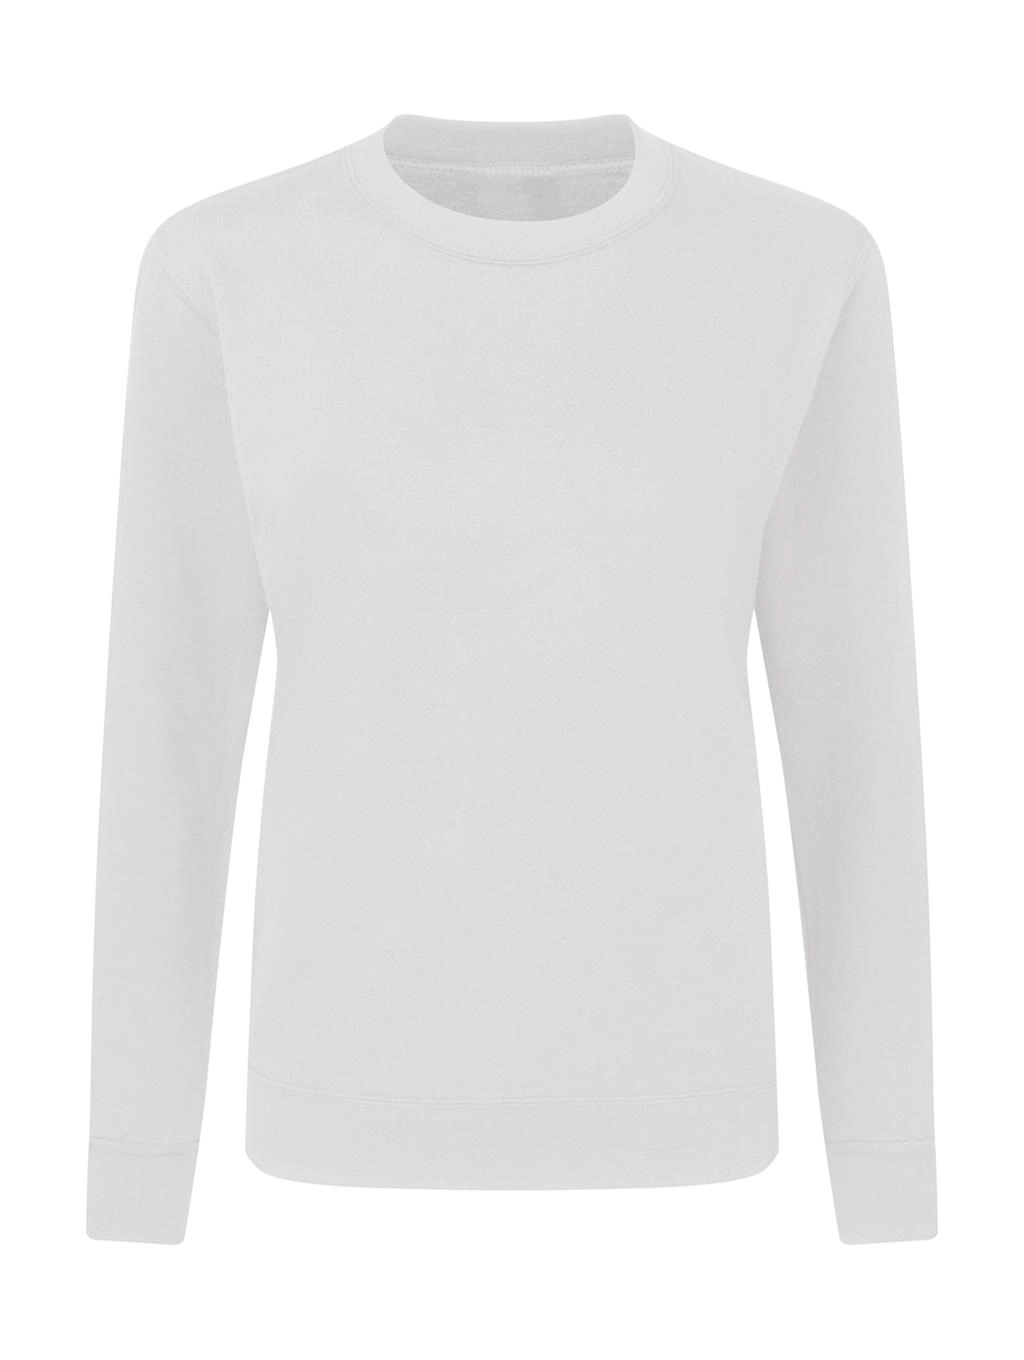 Crew Neck Sweatshirt Women zum Besticken und Bedrucken in der Farbe White mit Ihren Logo, Schriftzug oder Motiv.